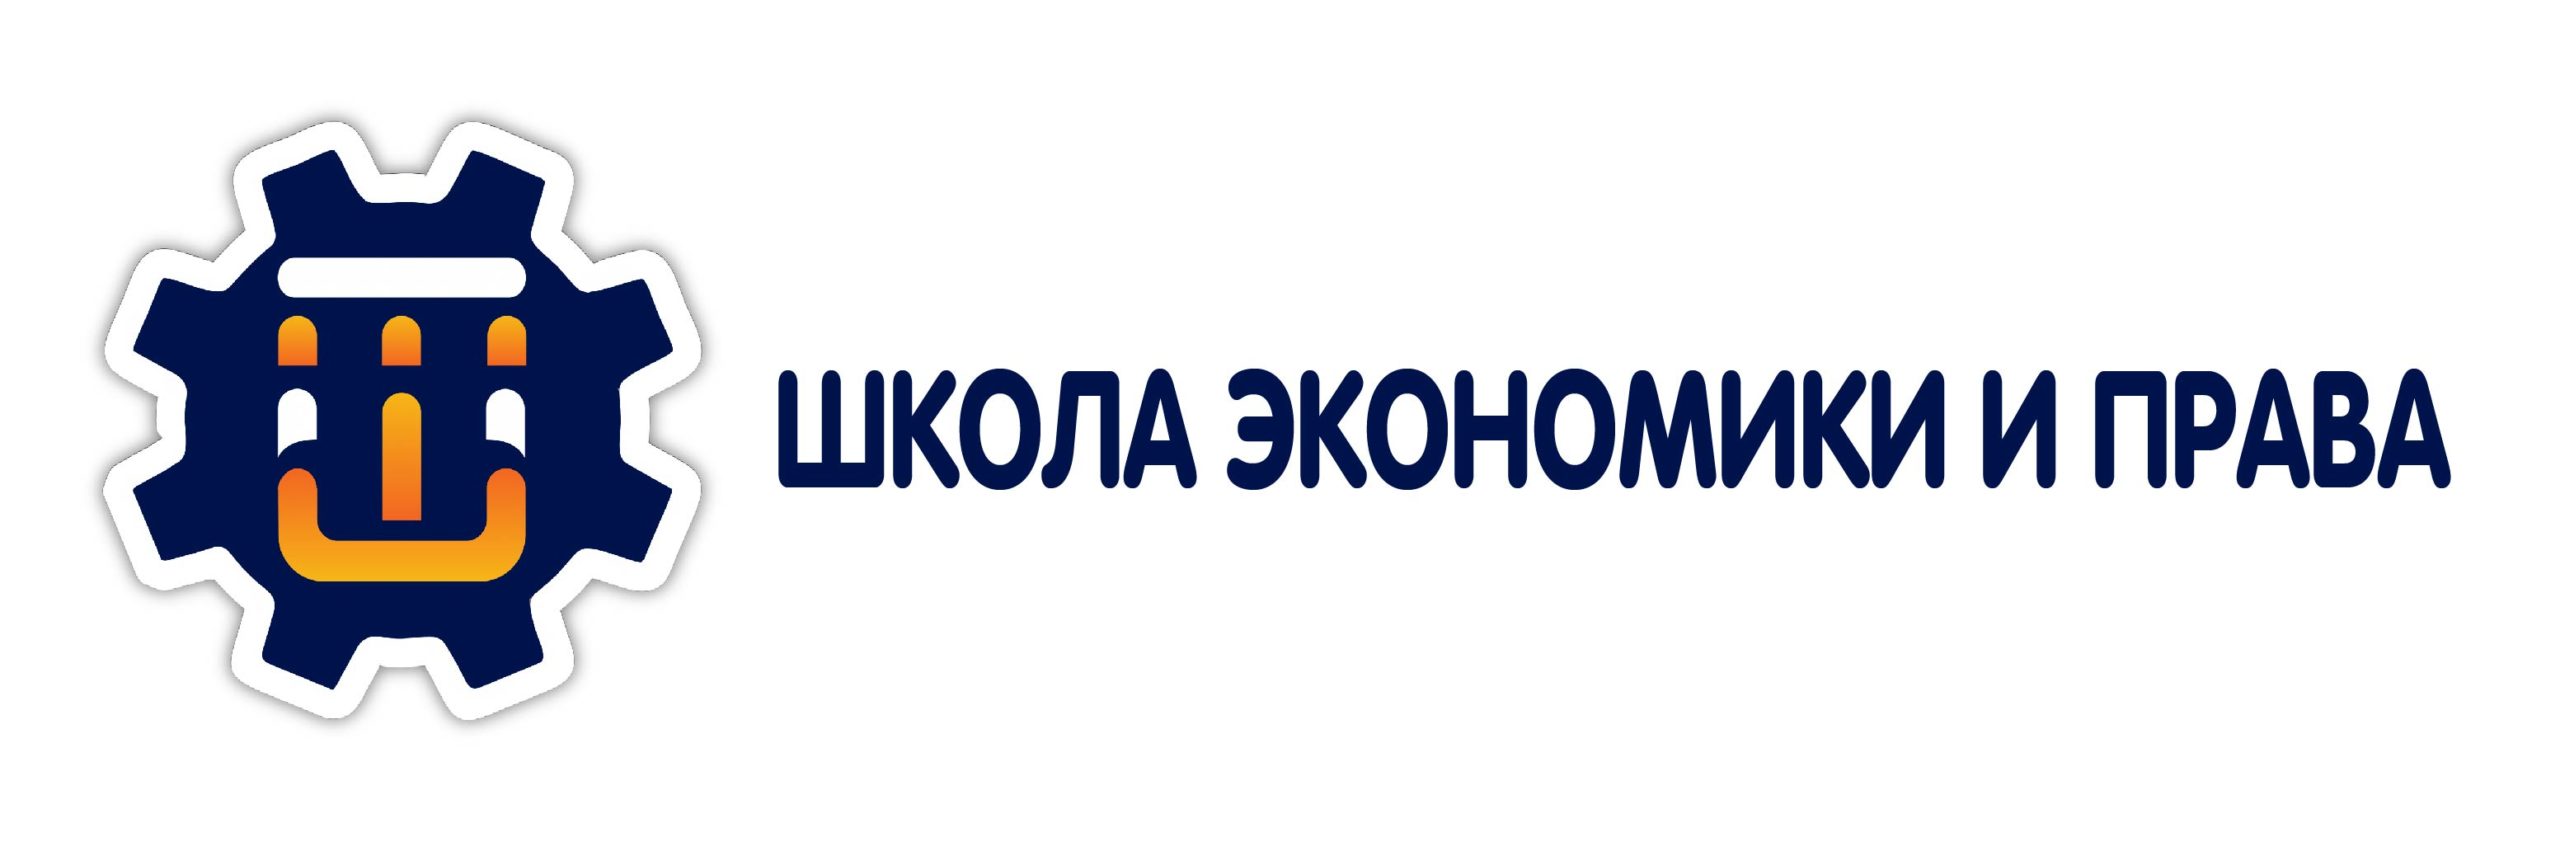 Логотип школы экономики и права